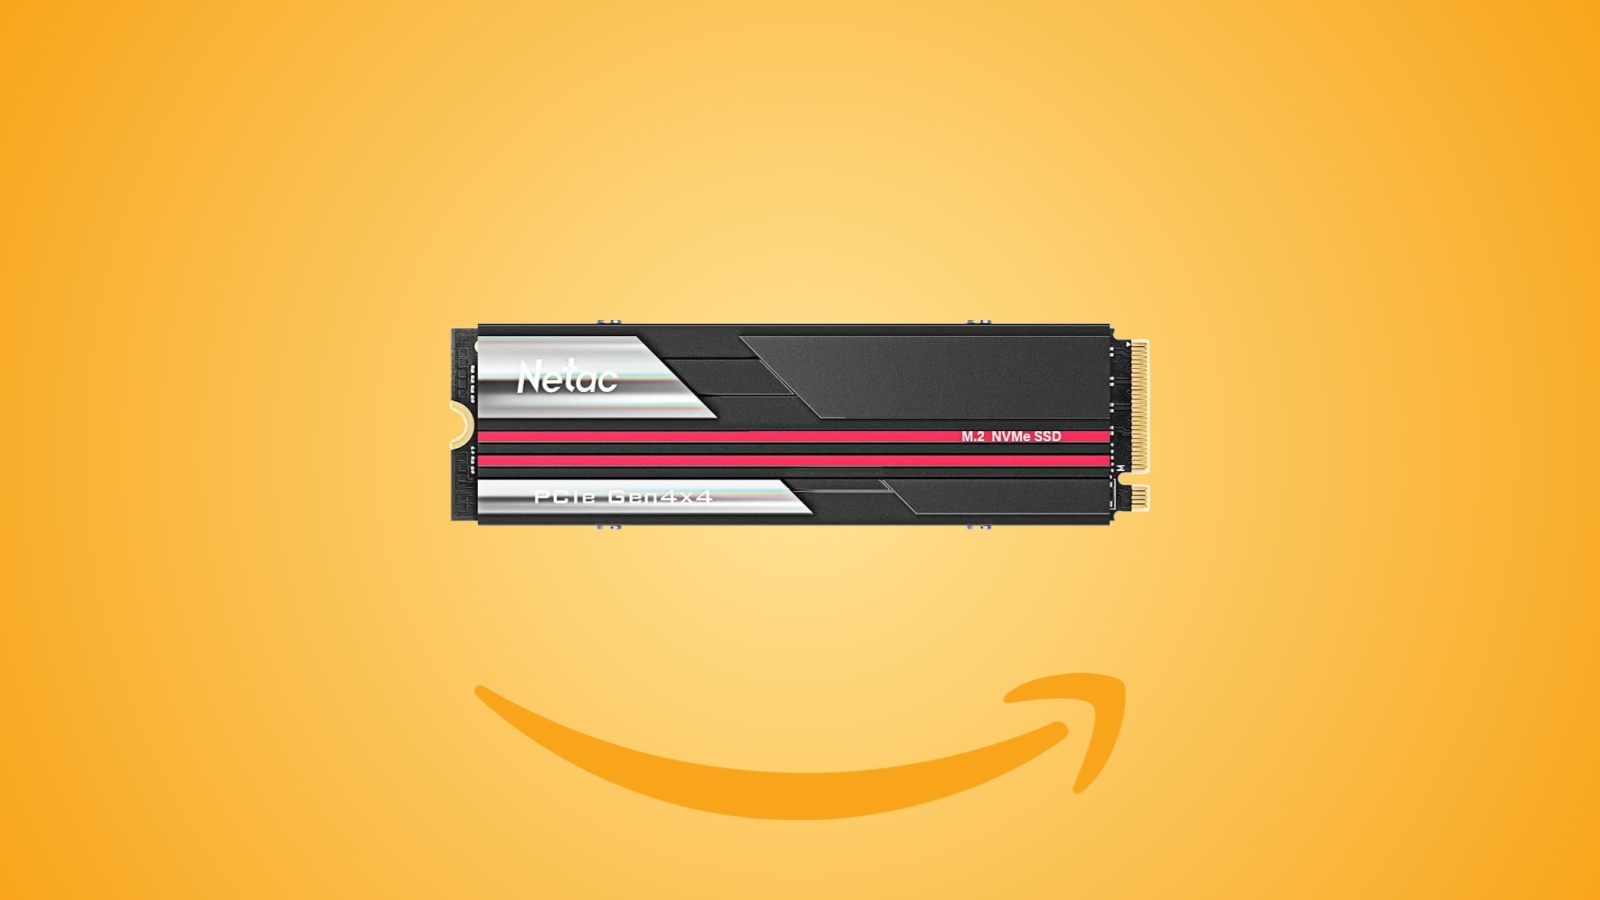 Offerte Amazon: SSD Netac da 1 TB con dissipatore per PS5 e PC in sconto al prezzo minimo con coupon